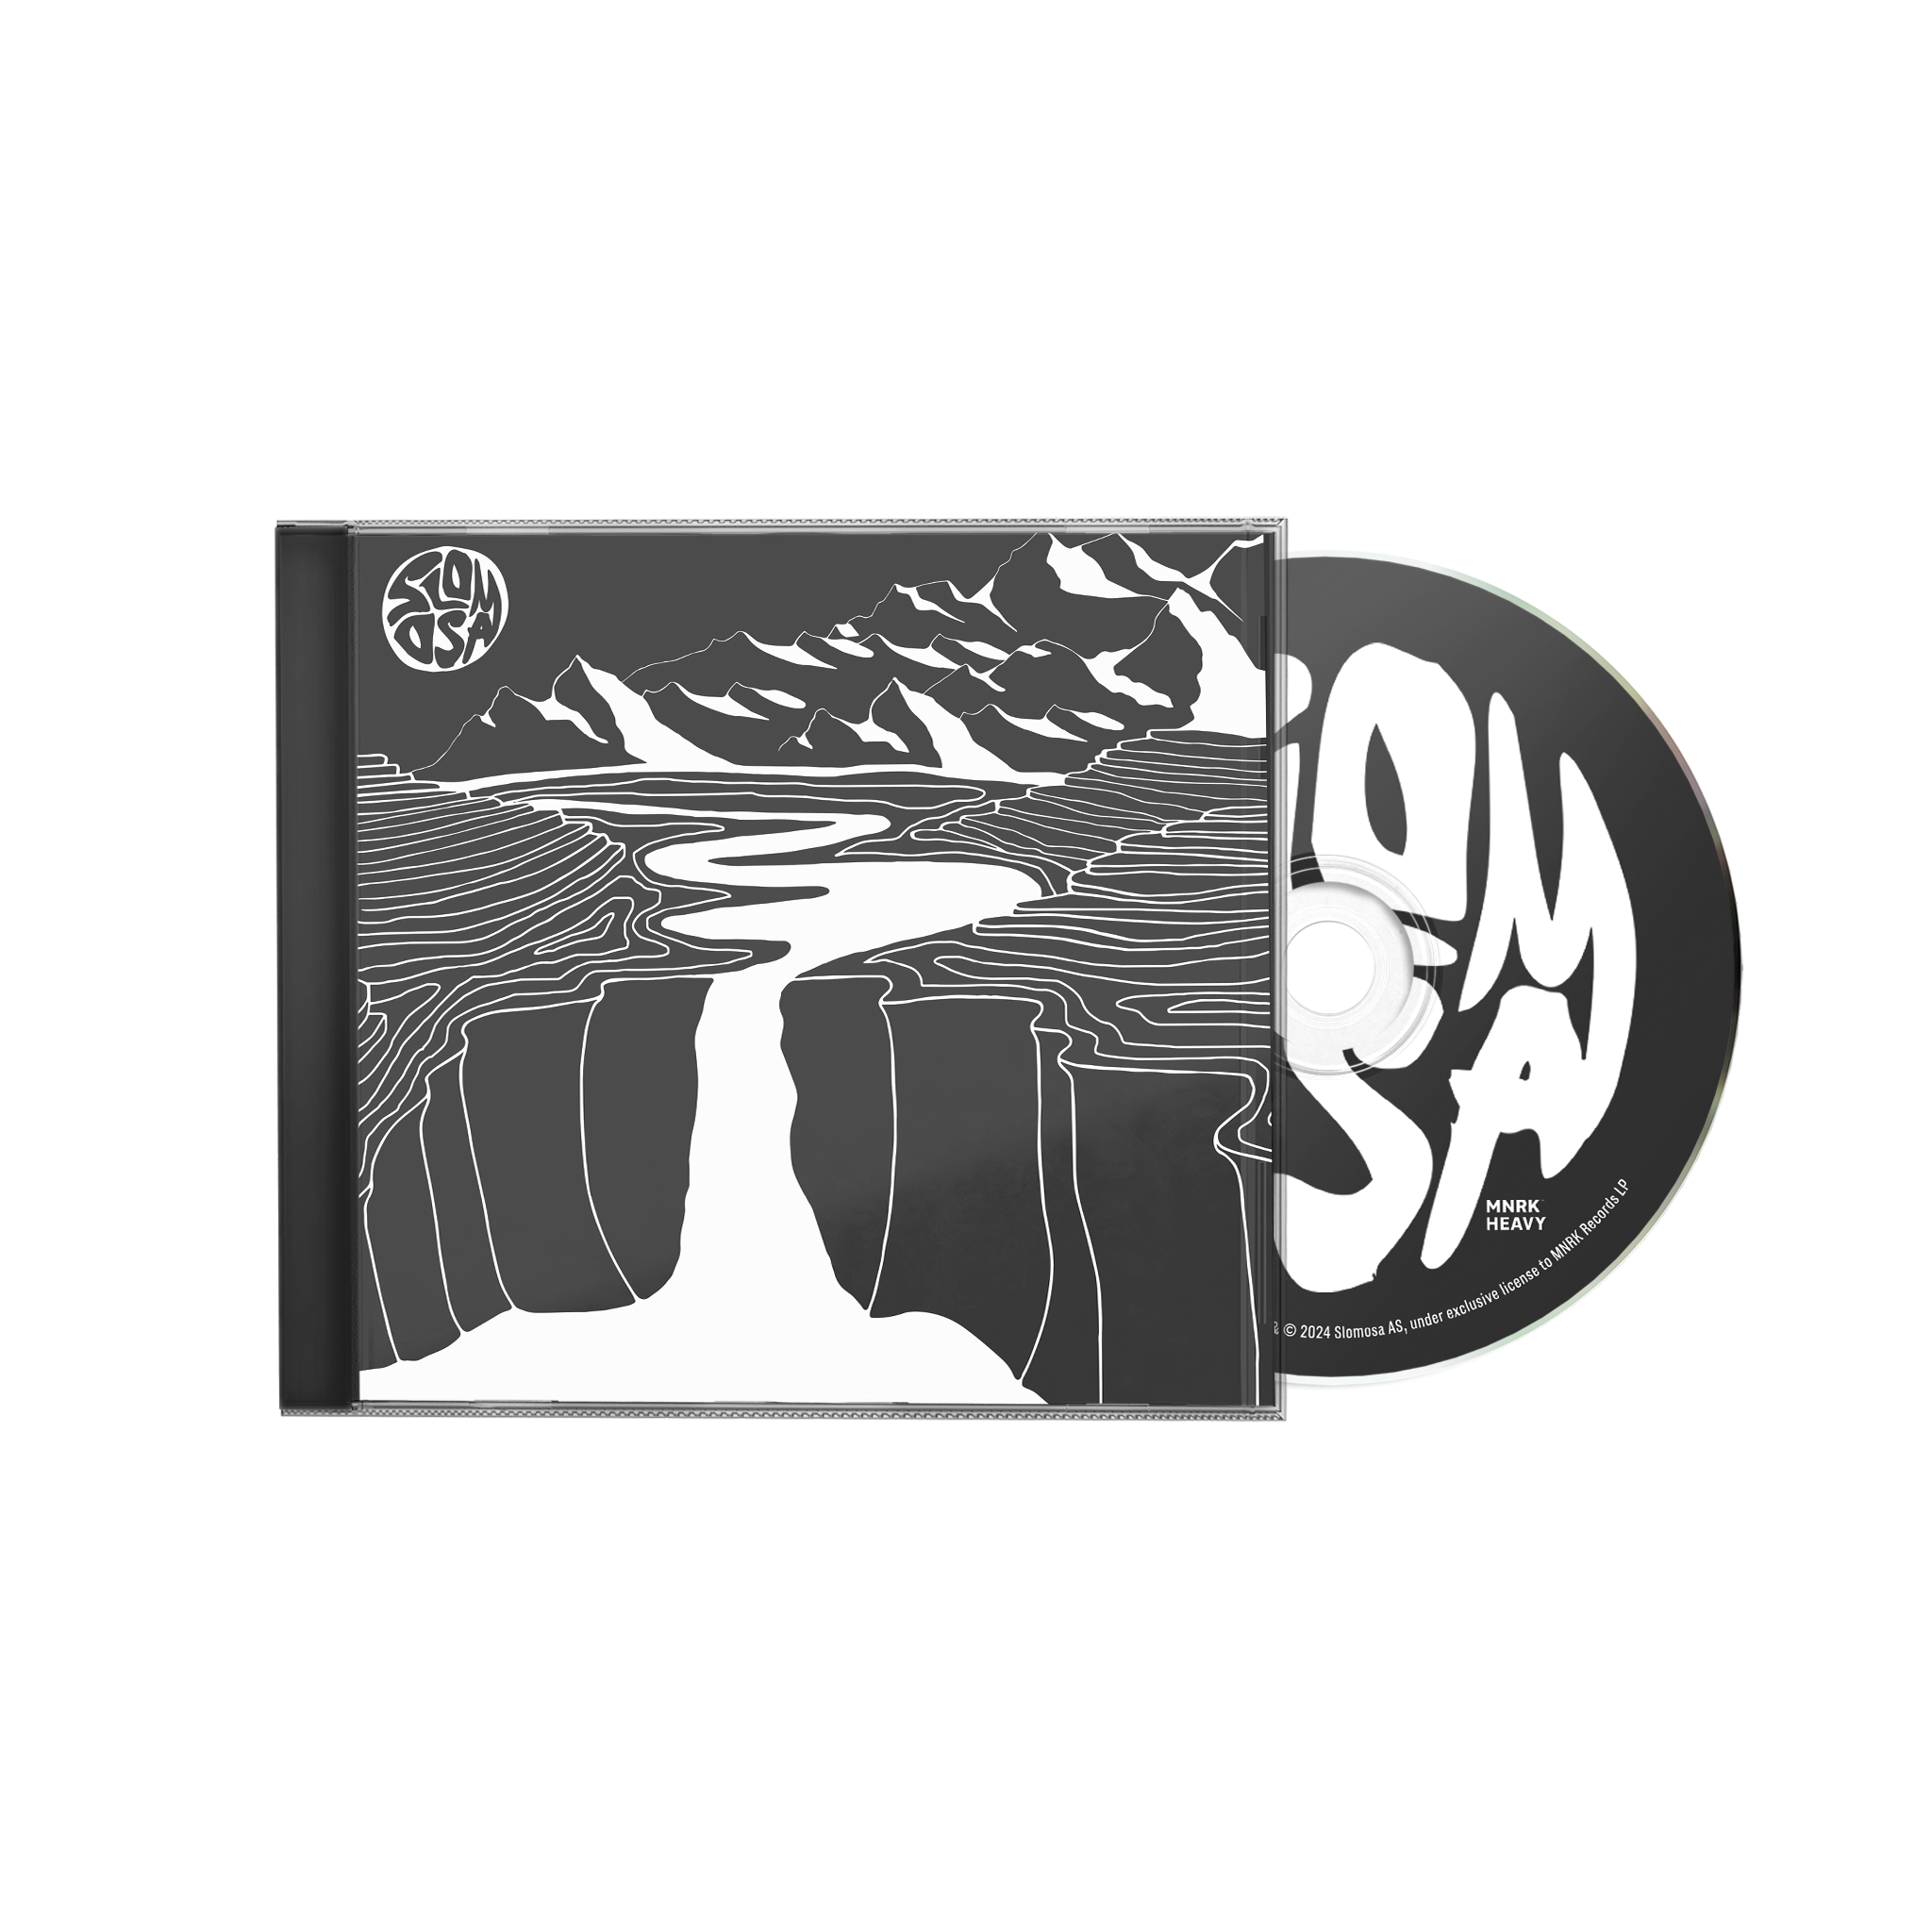 Slomosa - Tundra Rock CD